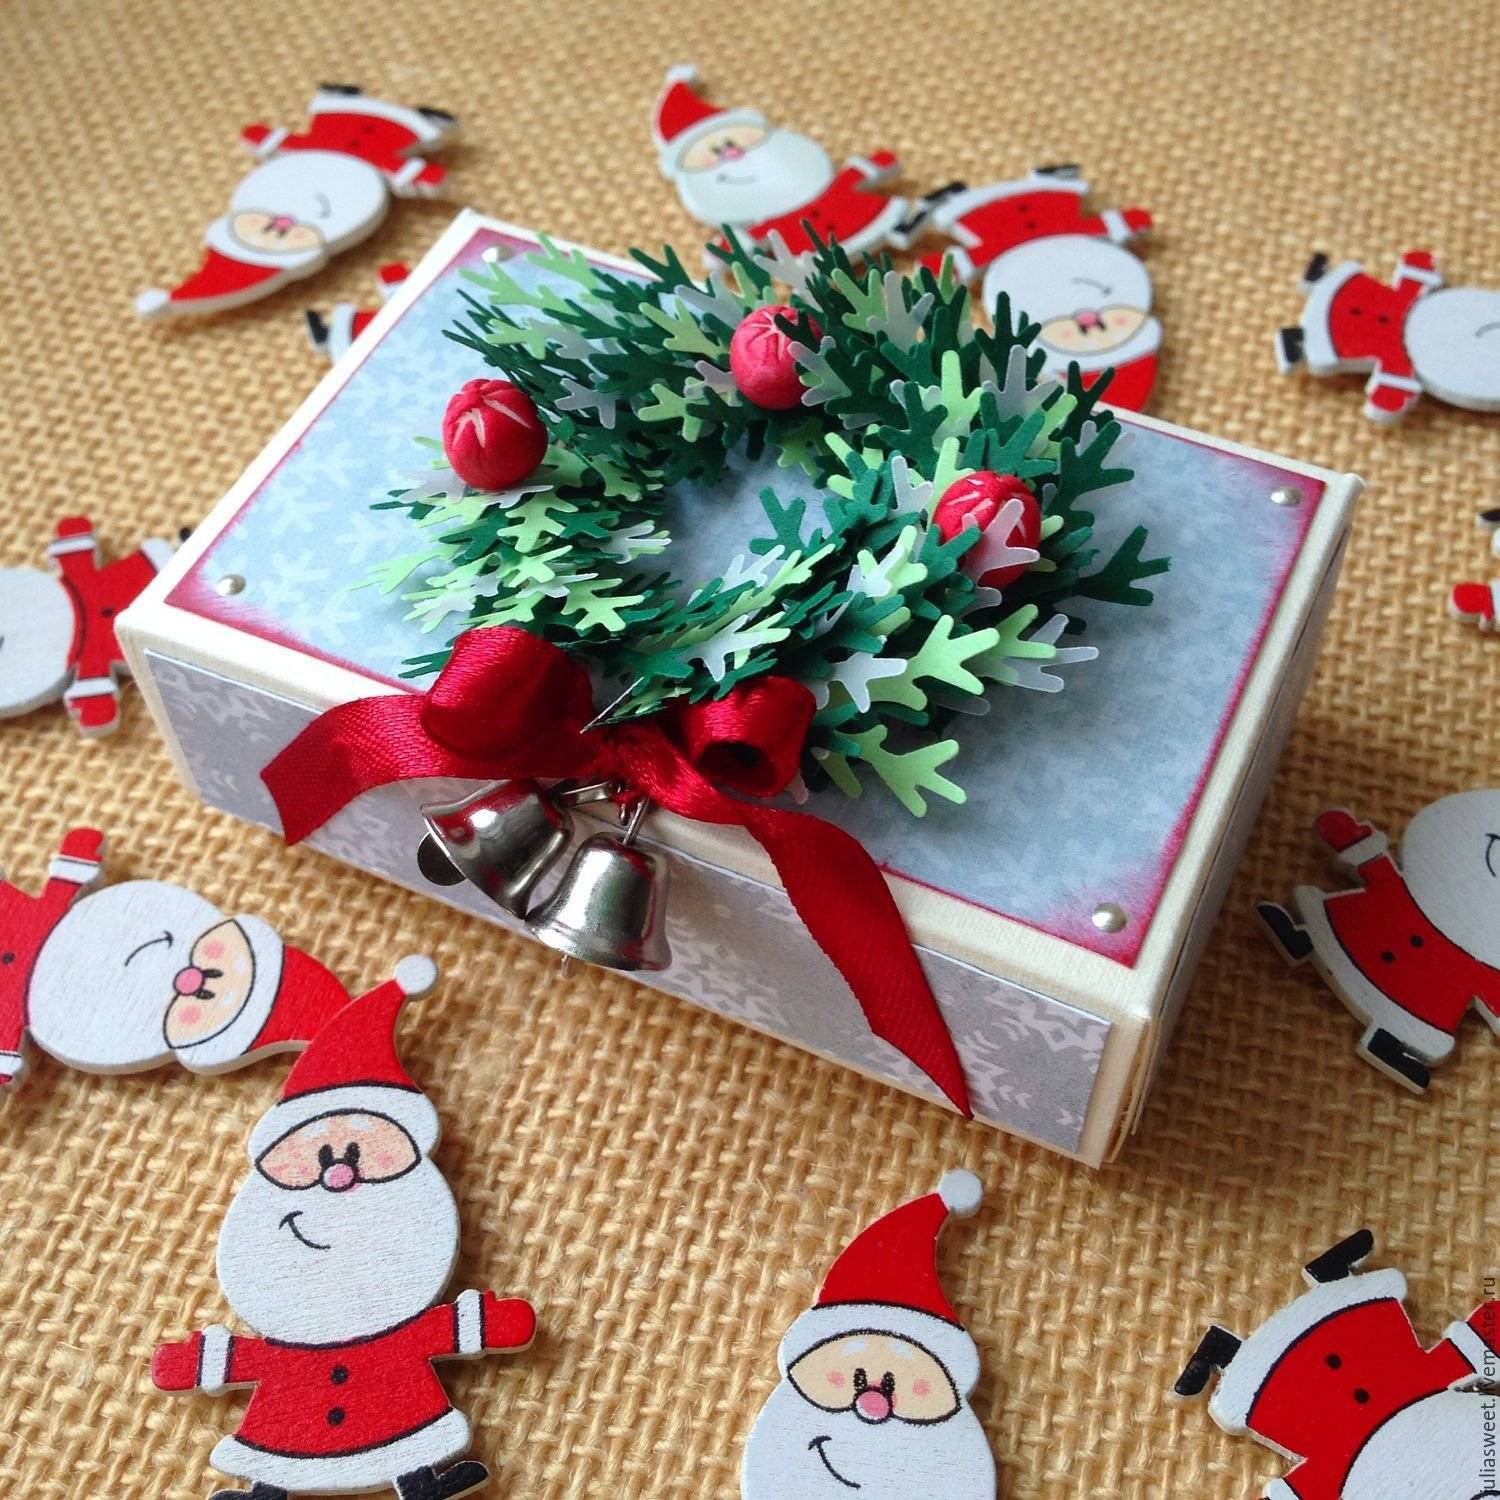 Как оформить новогодние подарки 2021: идеи на новый год и рождество - статьи и советы на furnishhome.ru